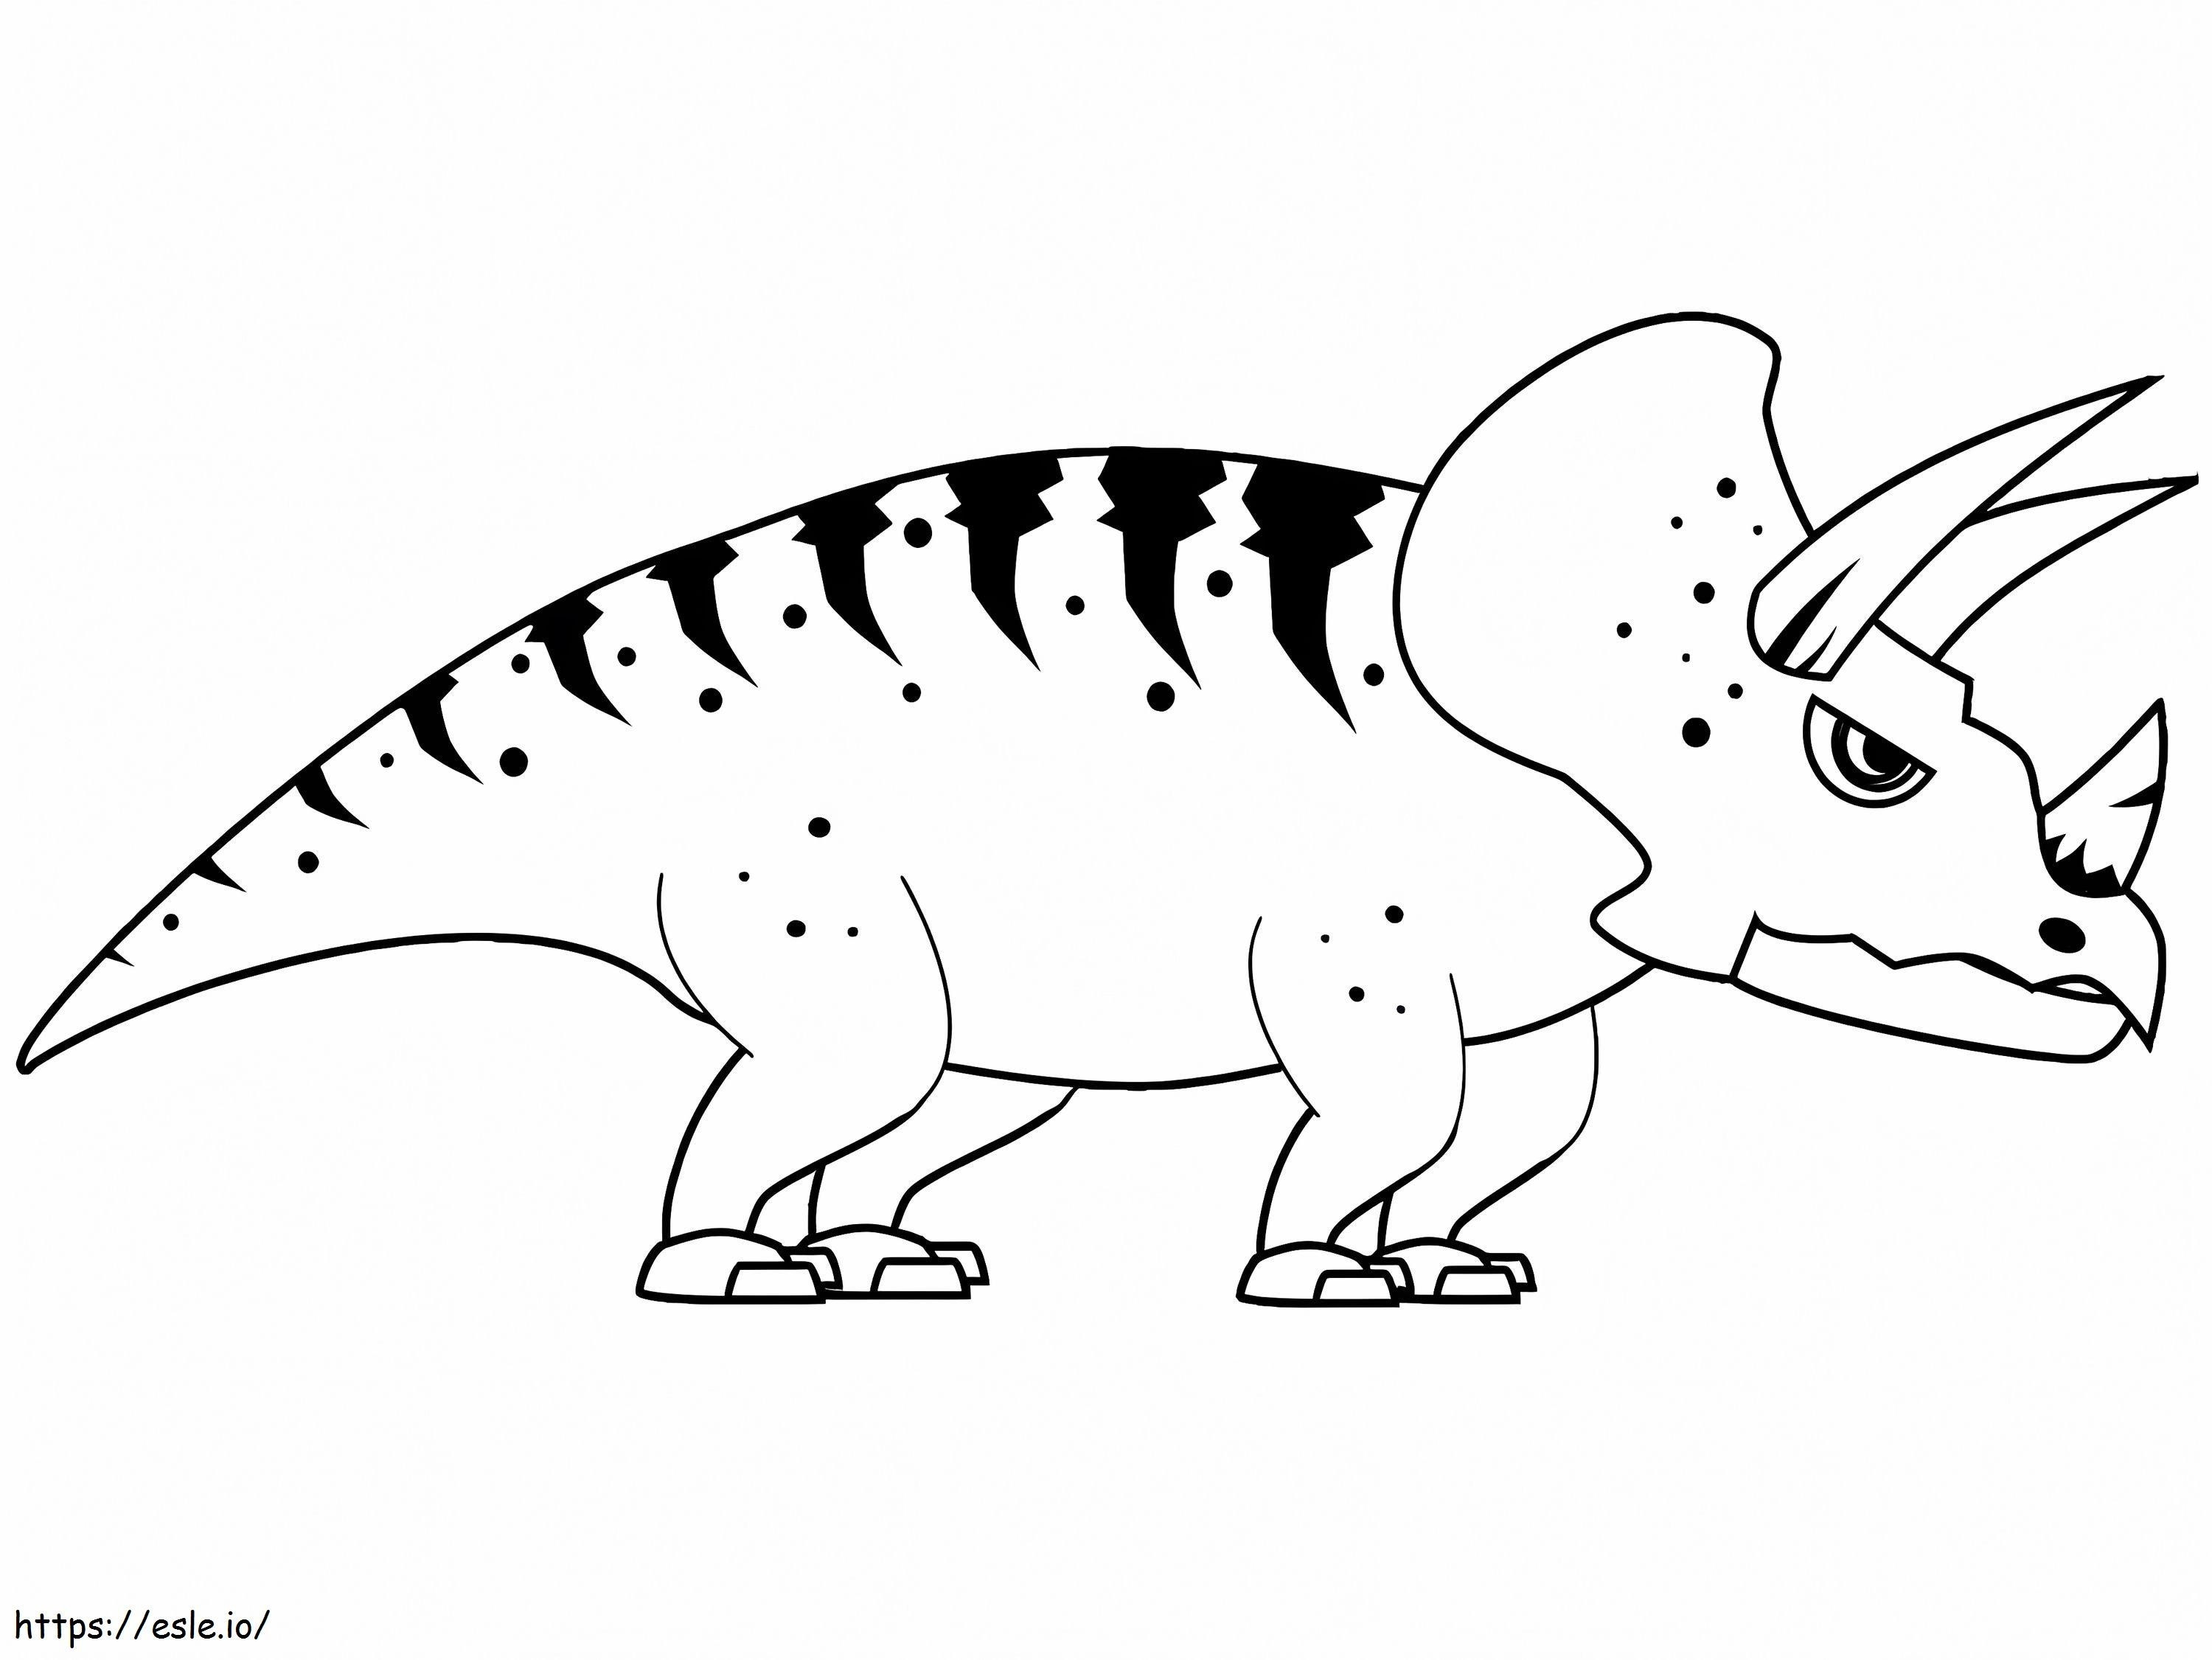 Coloriage Tricératops Coloriage Page 2 à imprimer dessin